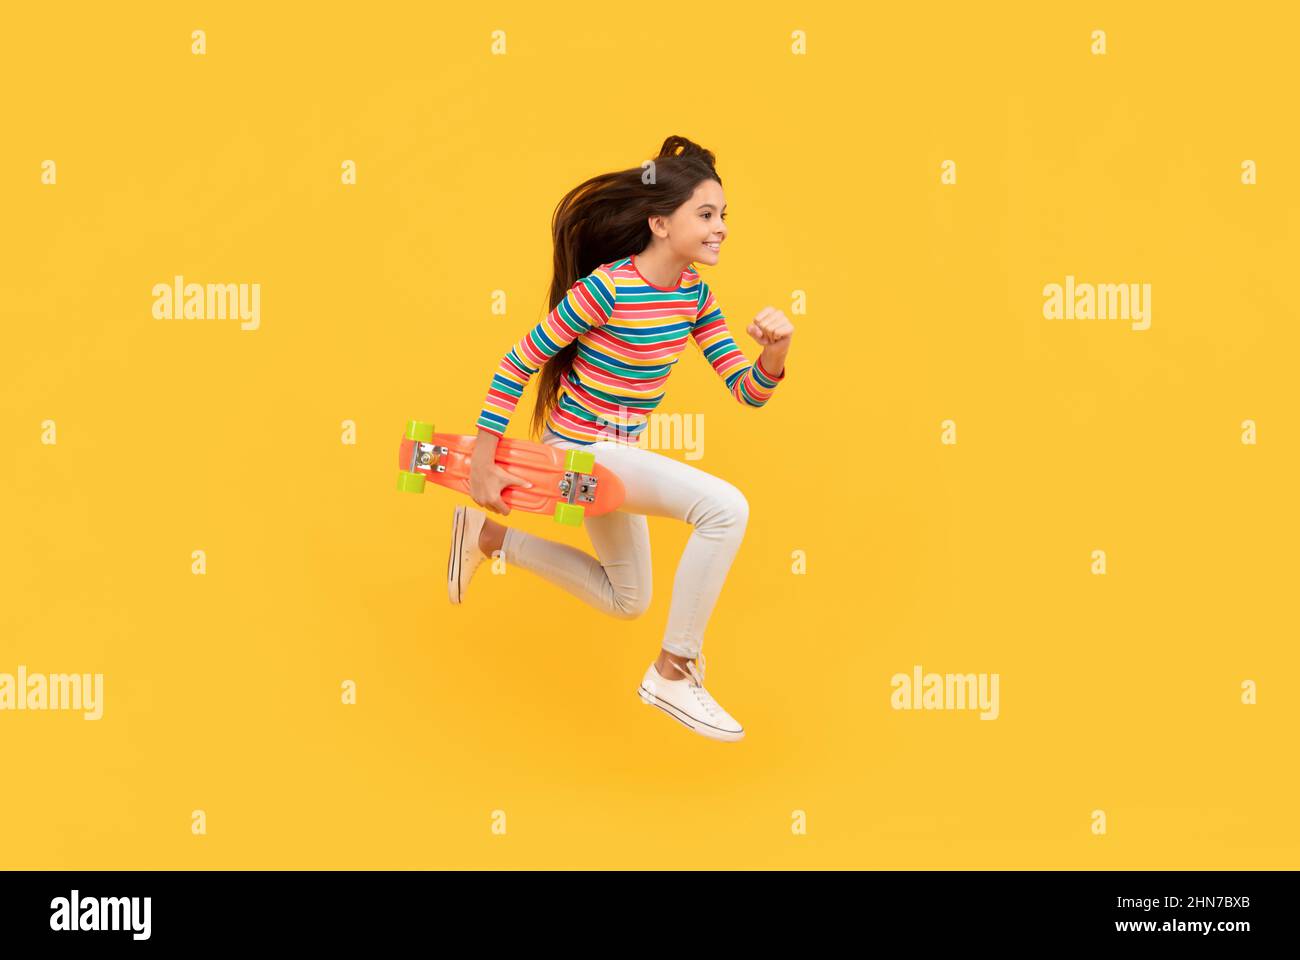 Glücklich energetische Kind Skateboarder springen mit Penny Board Skateboard, Kindheit Stockfoto